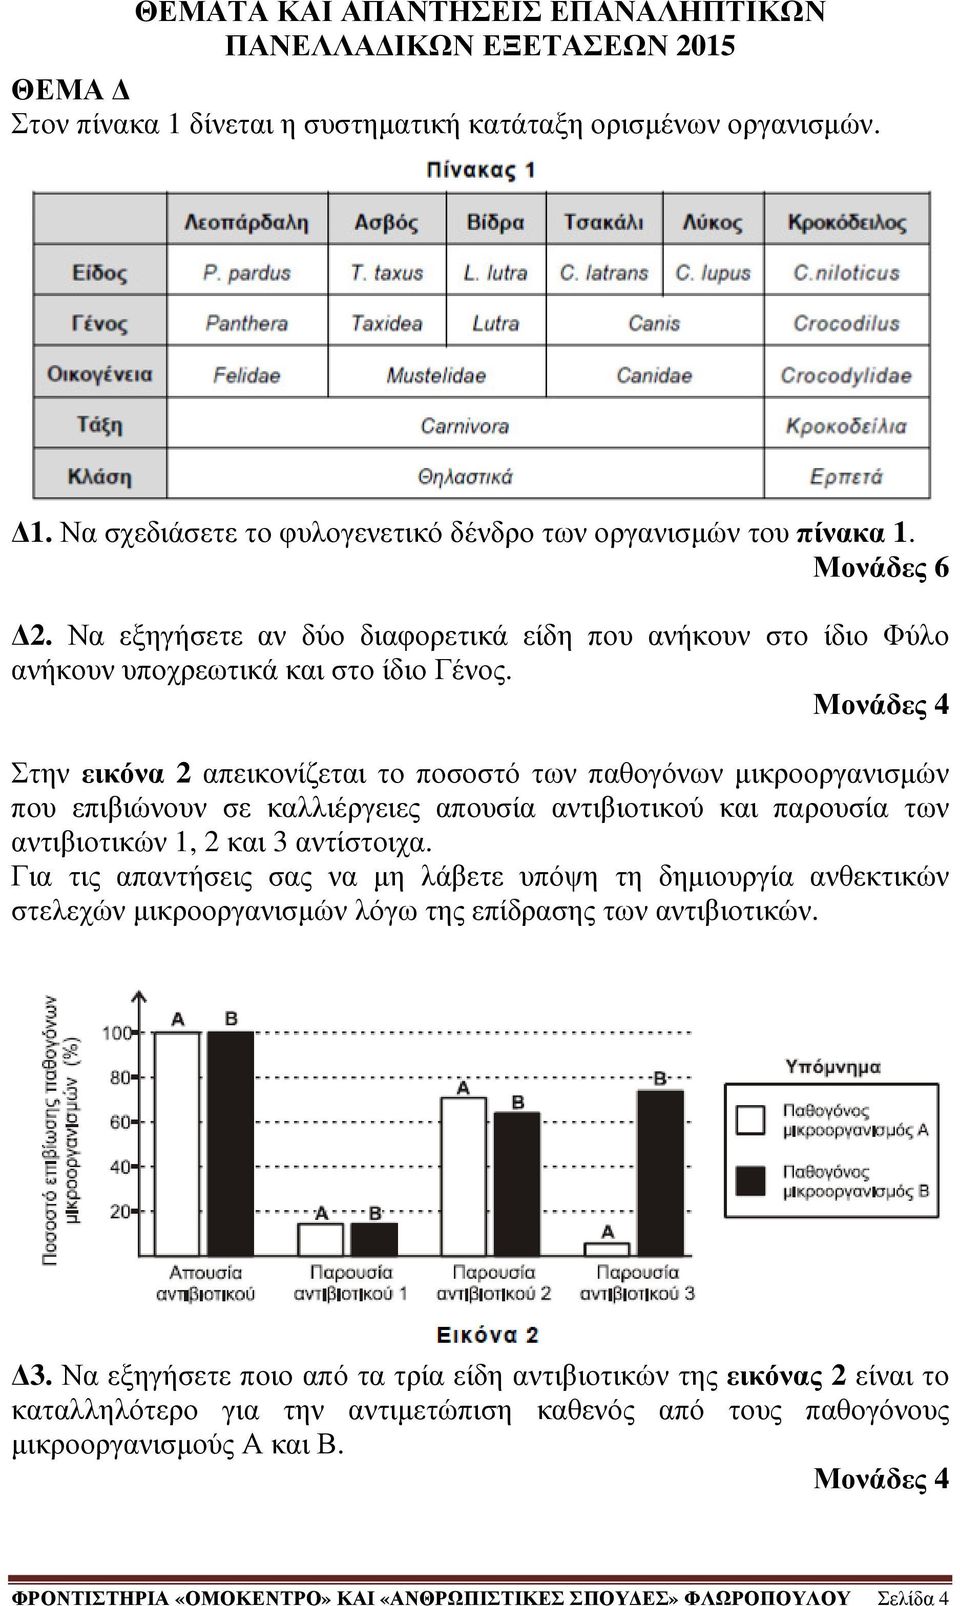 Στην εικόνα 2 απεικονίζεται το ποσοστό των παθογόνων µικροοργανισµών που επιβιώνουν σε καλλιέργειες απουσία αντιβιοτικού και παρουσία των αντιβιοτικών 1, 2 και 3 αντίστοιχα.